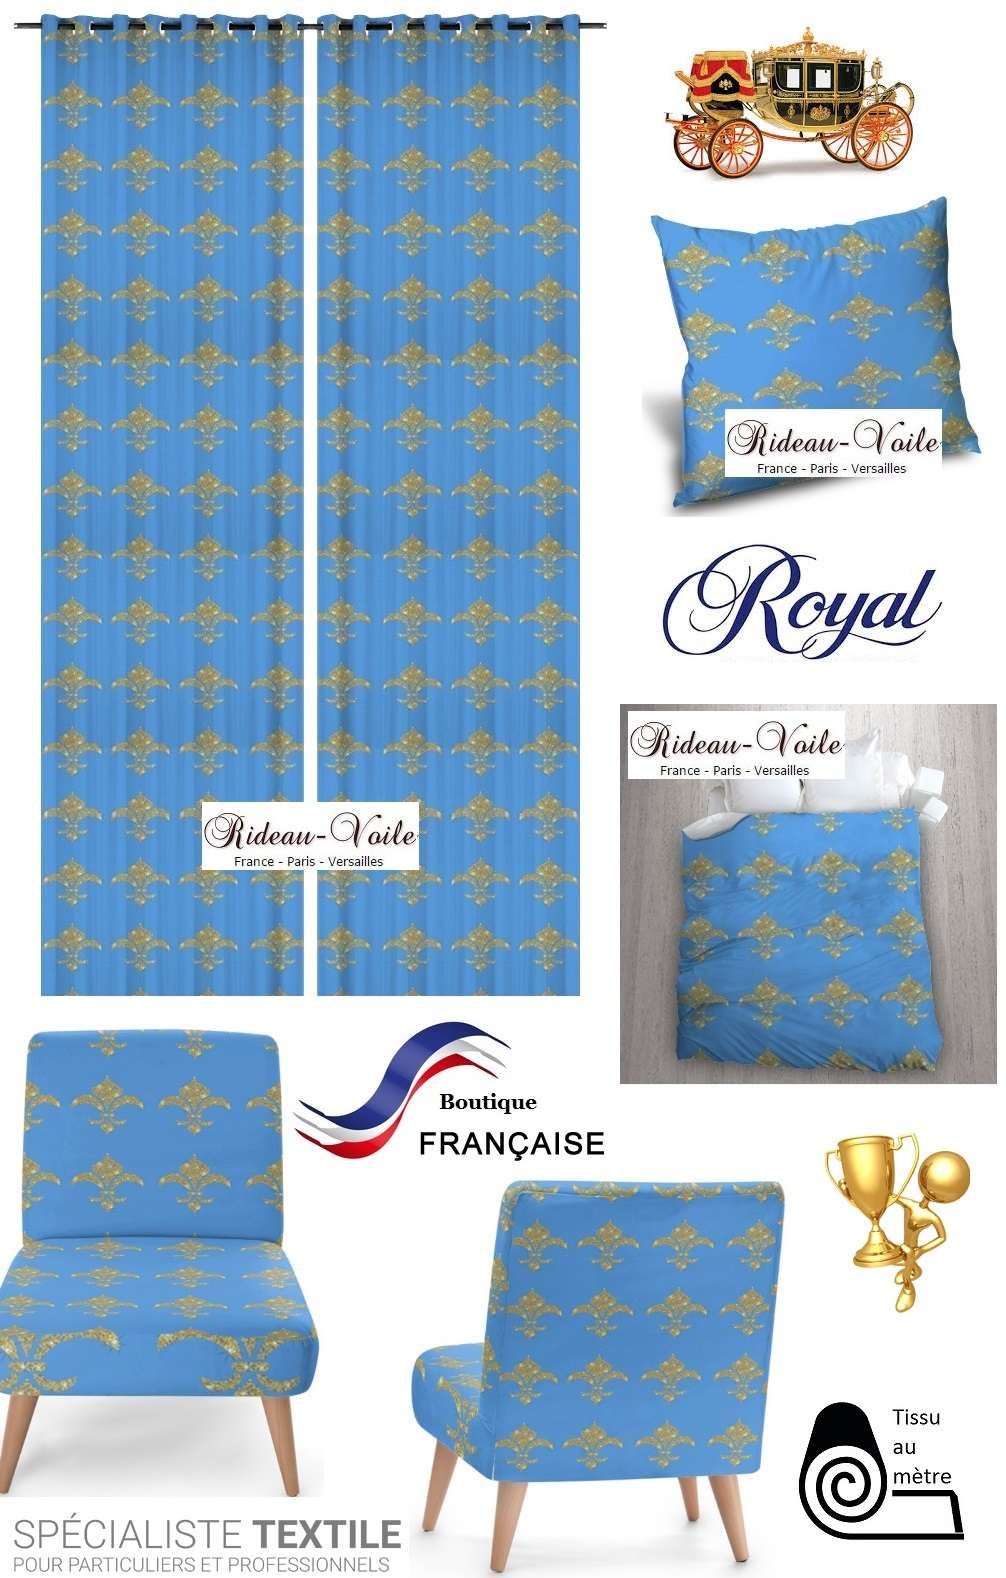 emblème royal fauteuil siège rideau coussin tapisserie garnissage décoration décorateur style Empire fleur de lys or bleu déco luxe Paris Versailles Quebec paillette